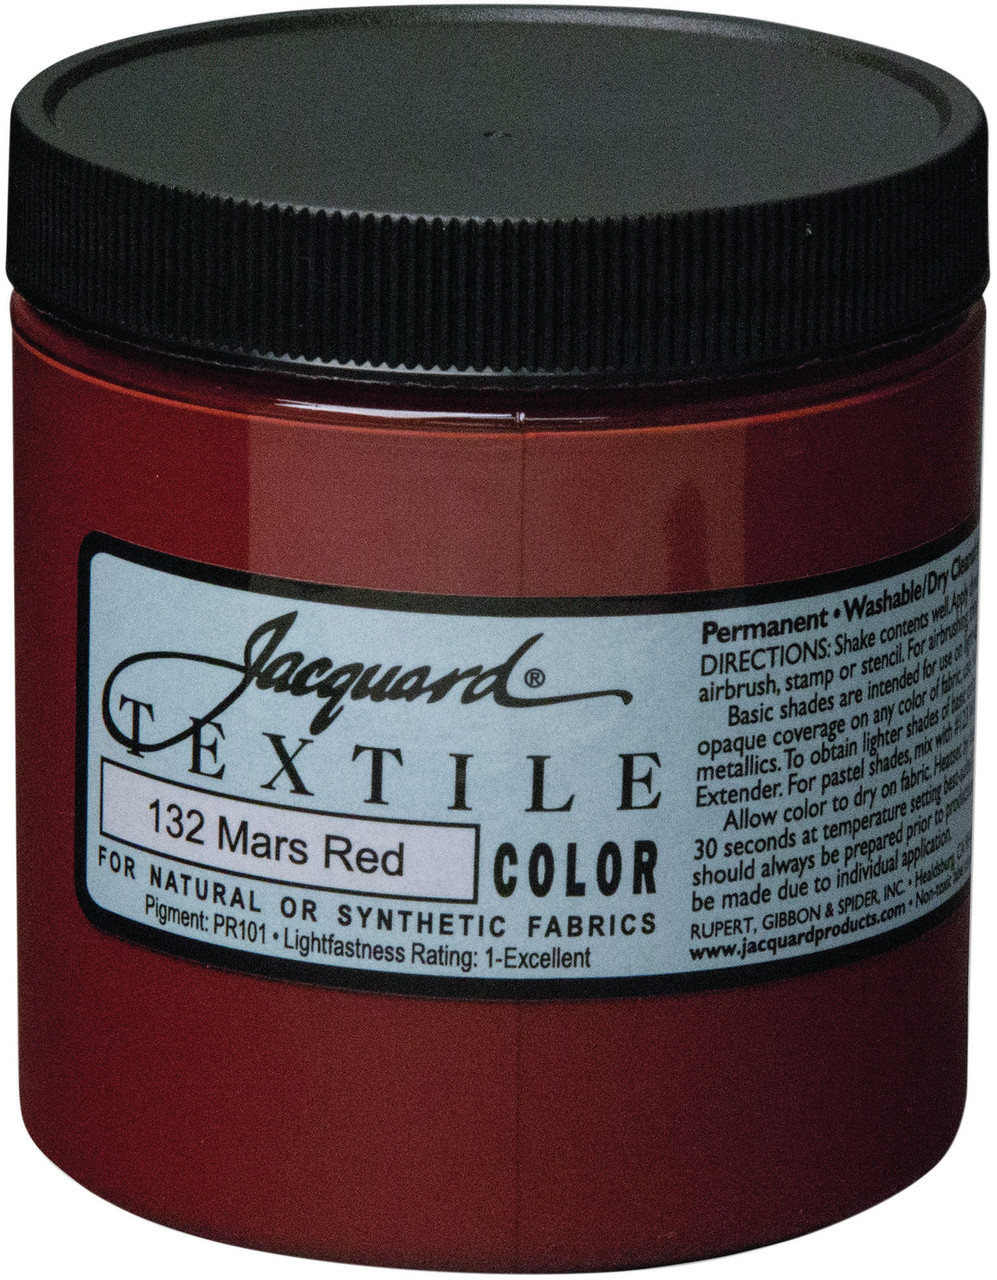 Jacquard Textile Color Fabric Paint 8oz-Mars Red TEXTILE8-2132